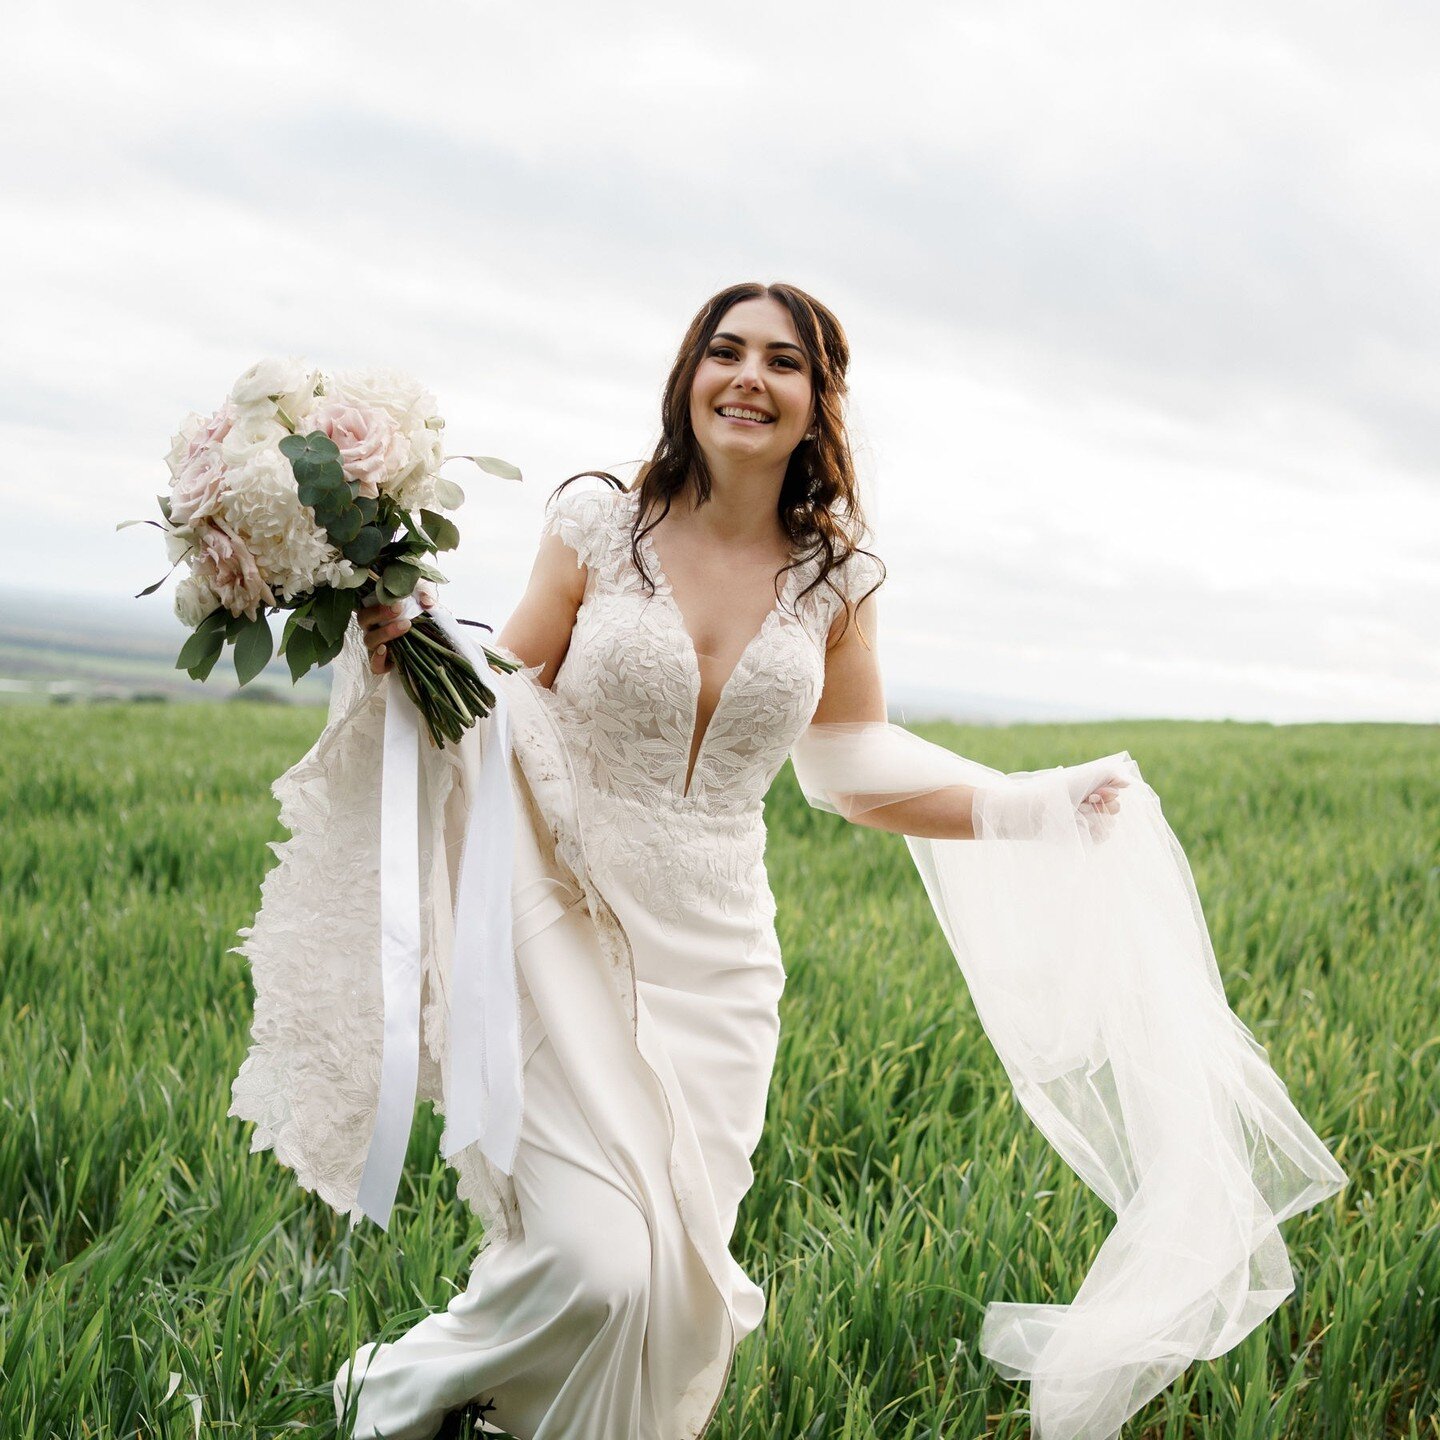 Steph ❤️

#bride #weddings #marrydownsouth #albanyflorist #albanyweddings #albanysweddingflorist #marry #bridebouquet #photographer